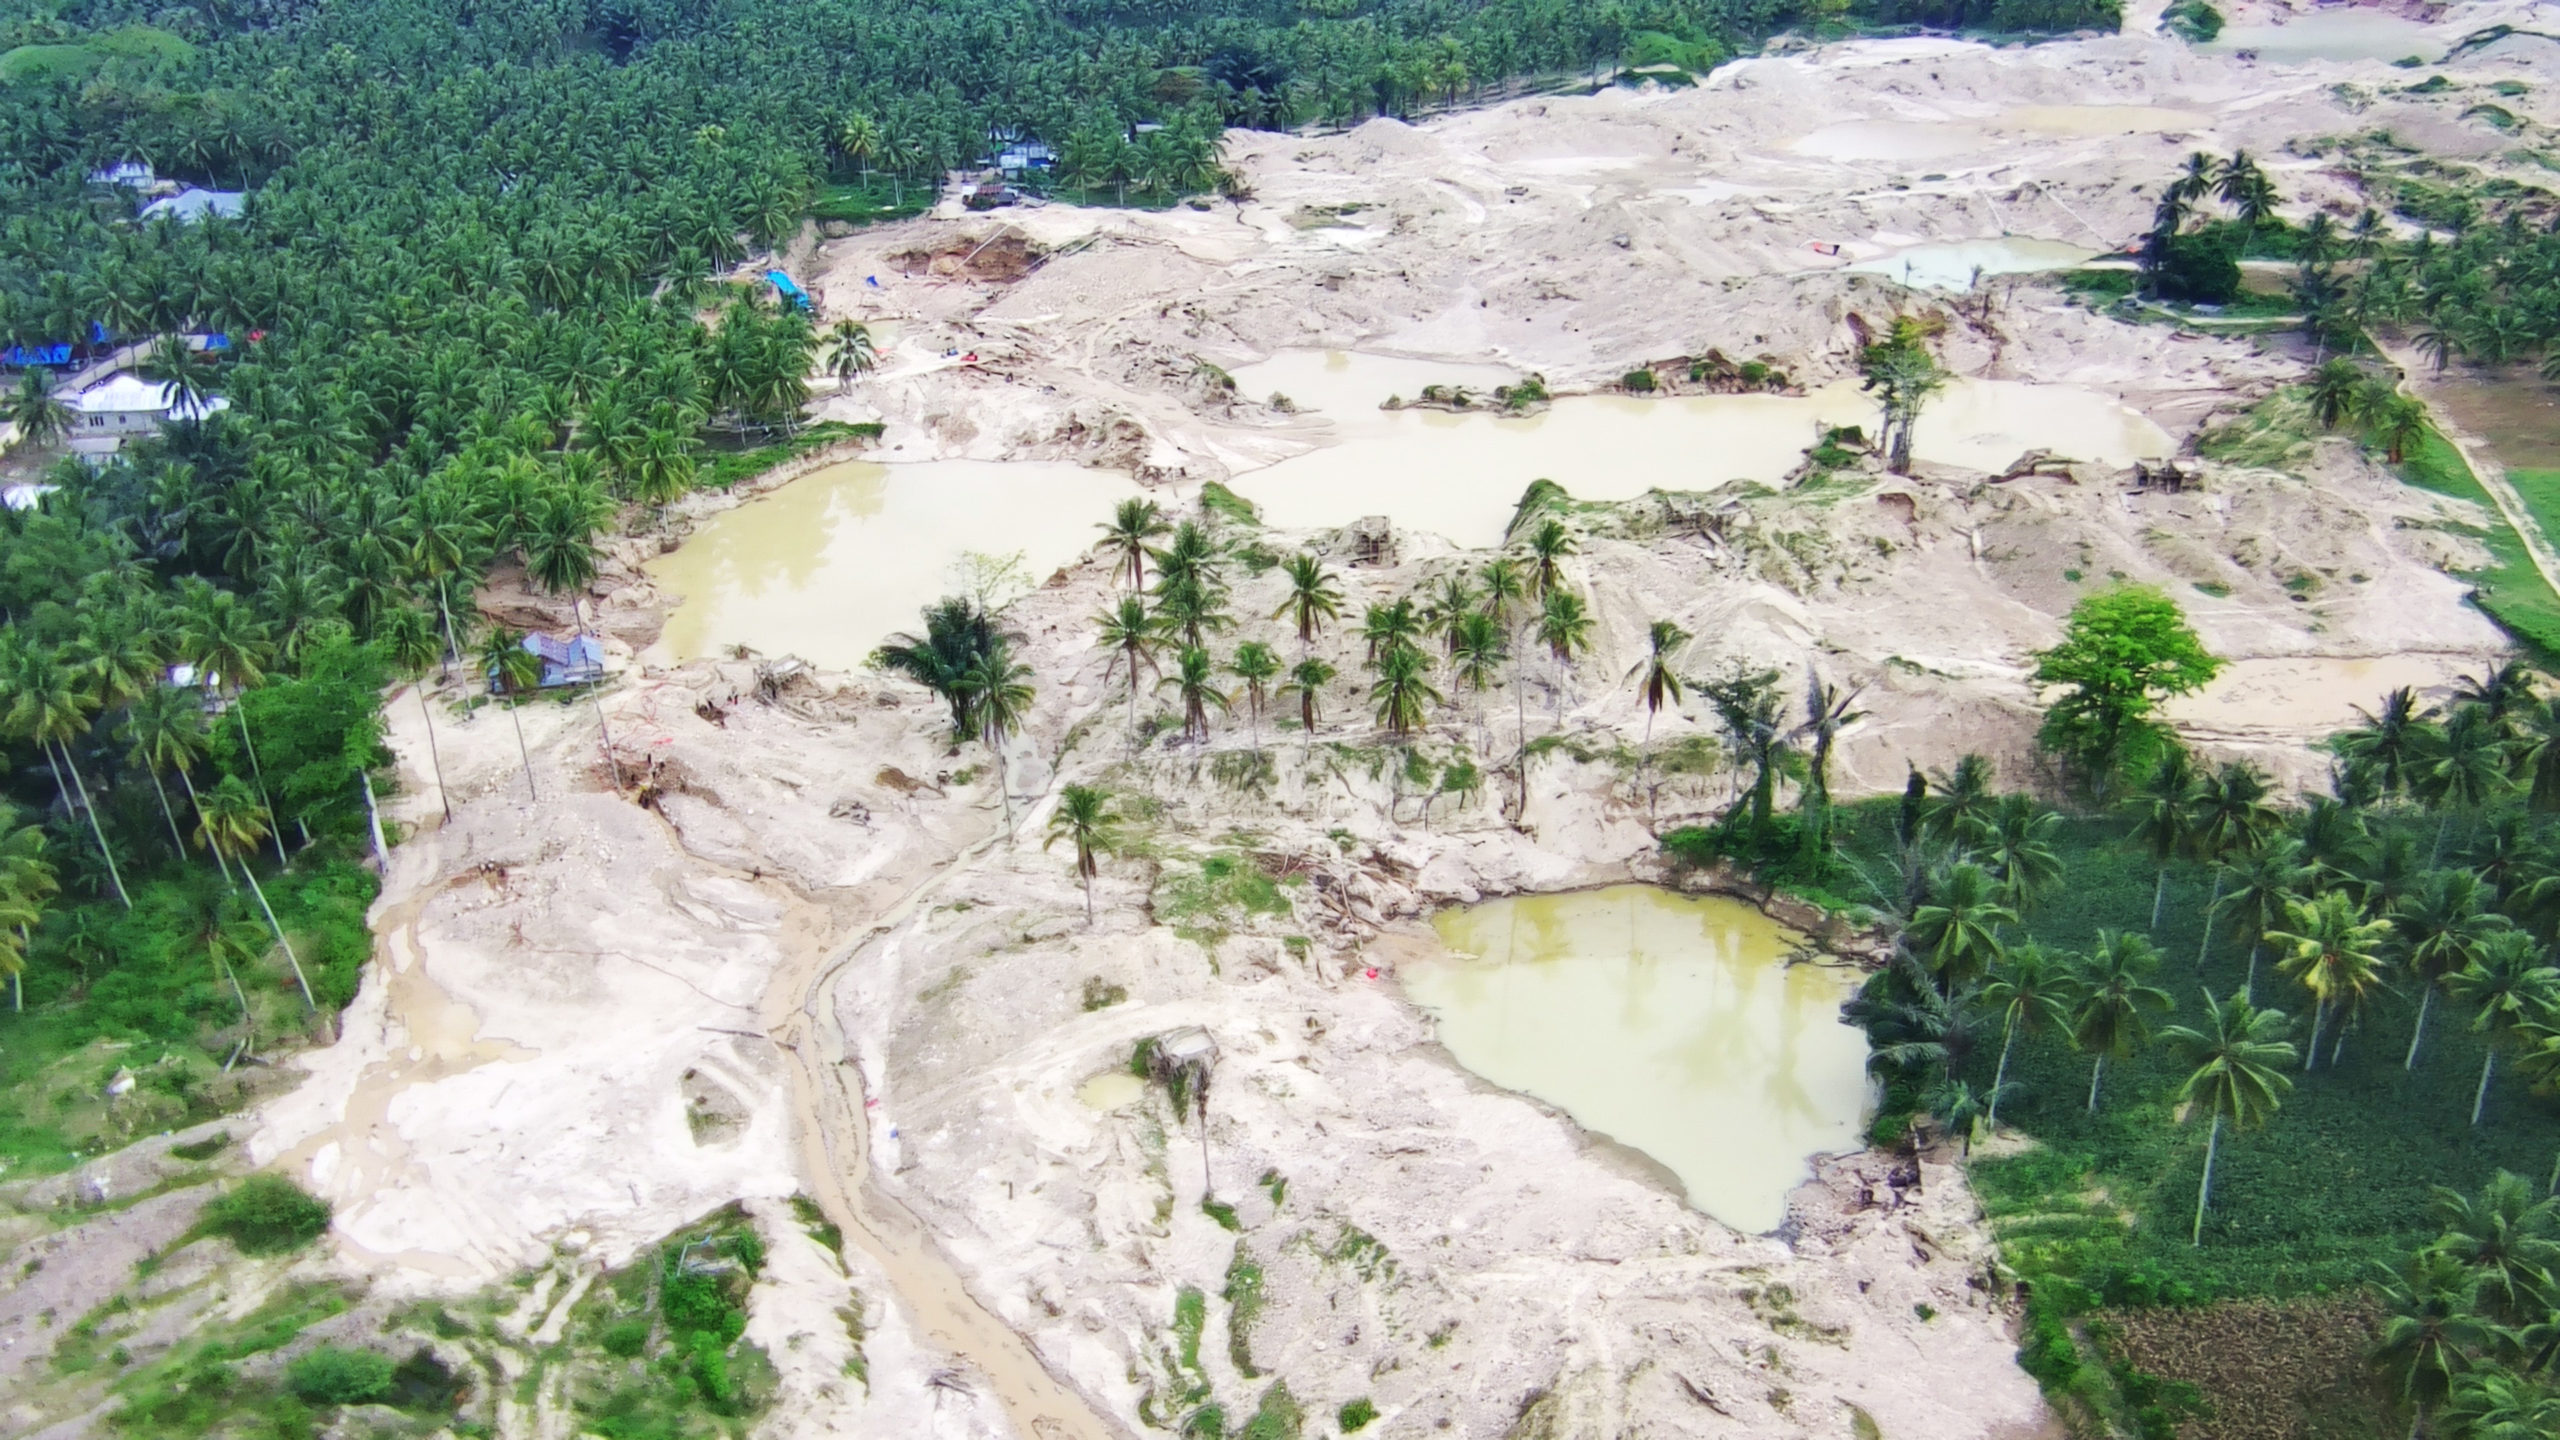 Nasib Cagar Alam Panua, terbabat tambang emas ilegal. Foto: Sarjan Lahay. Mongabay Indonesia